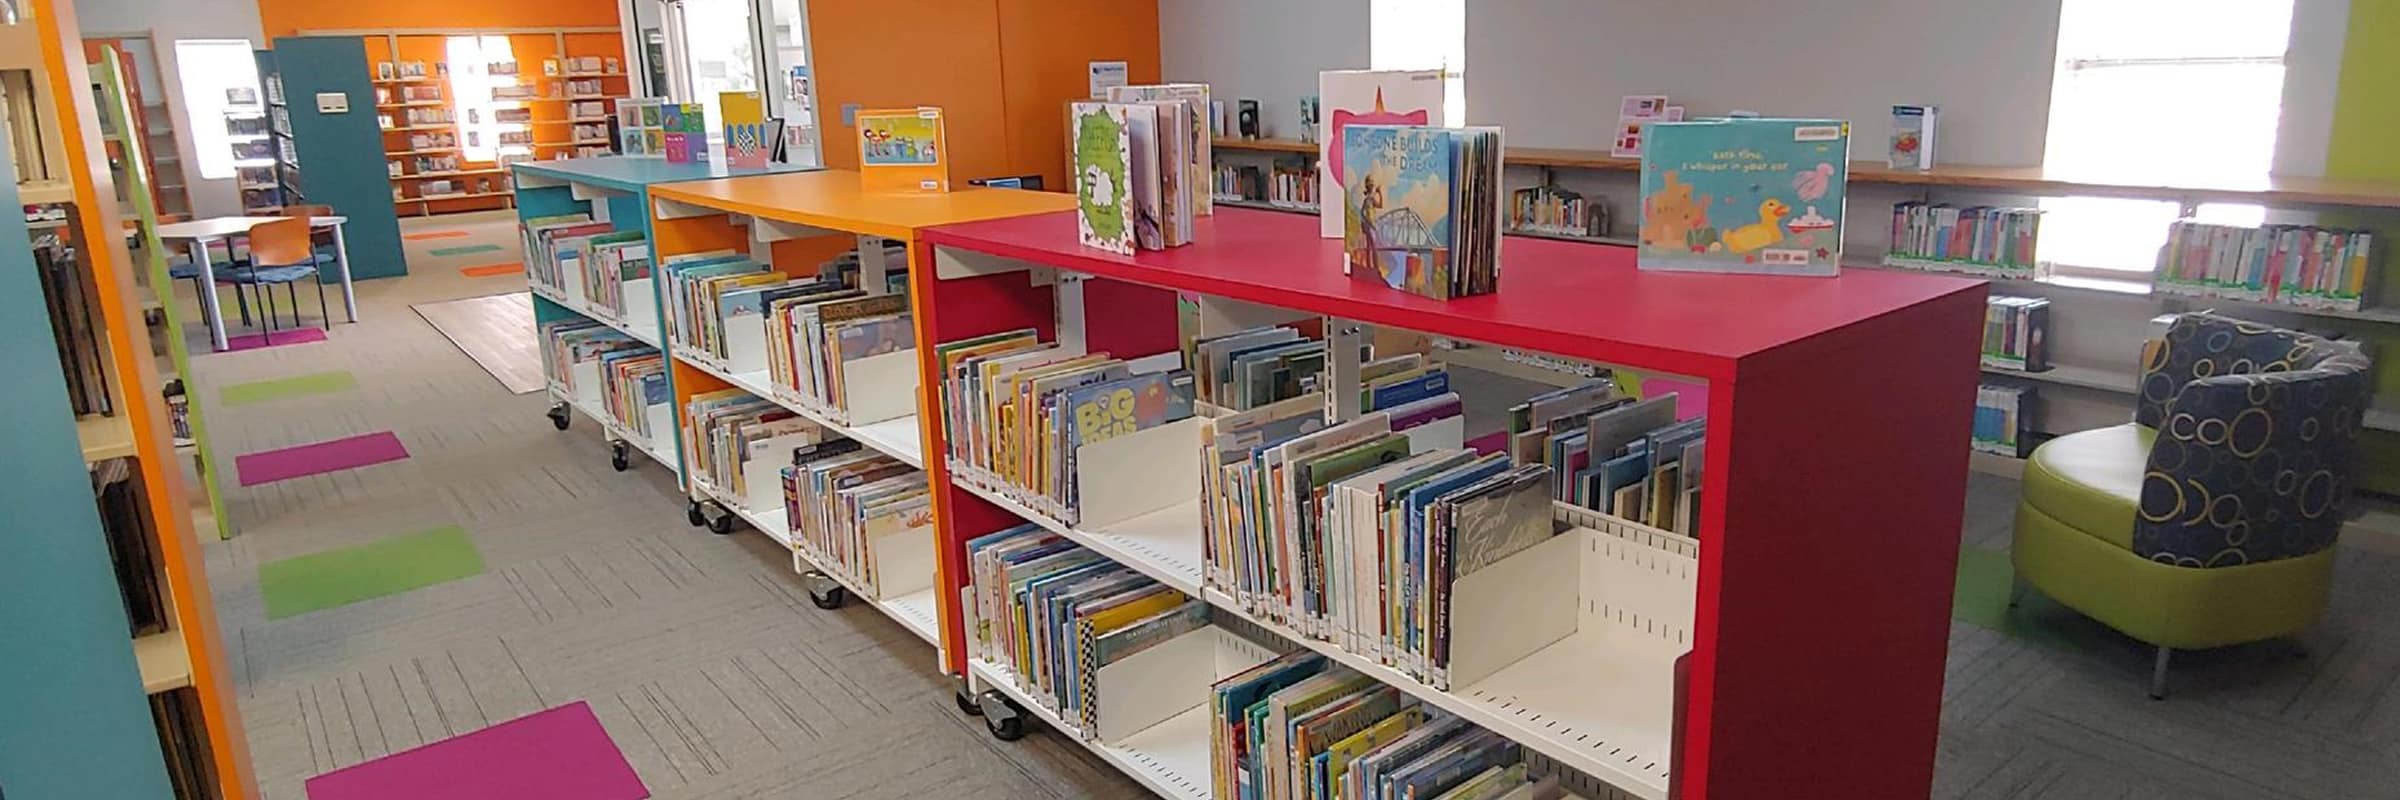 Bright bookcases in children's library area.